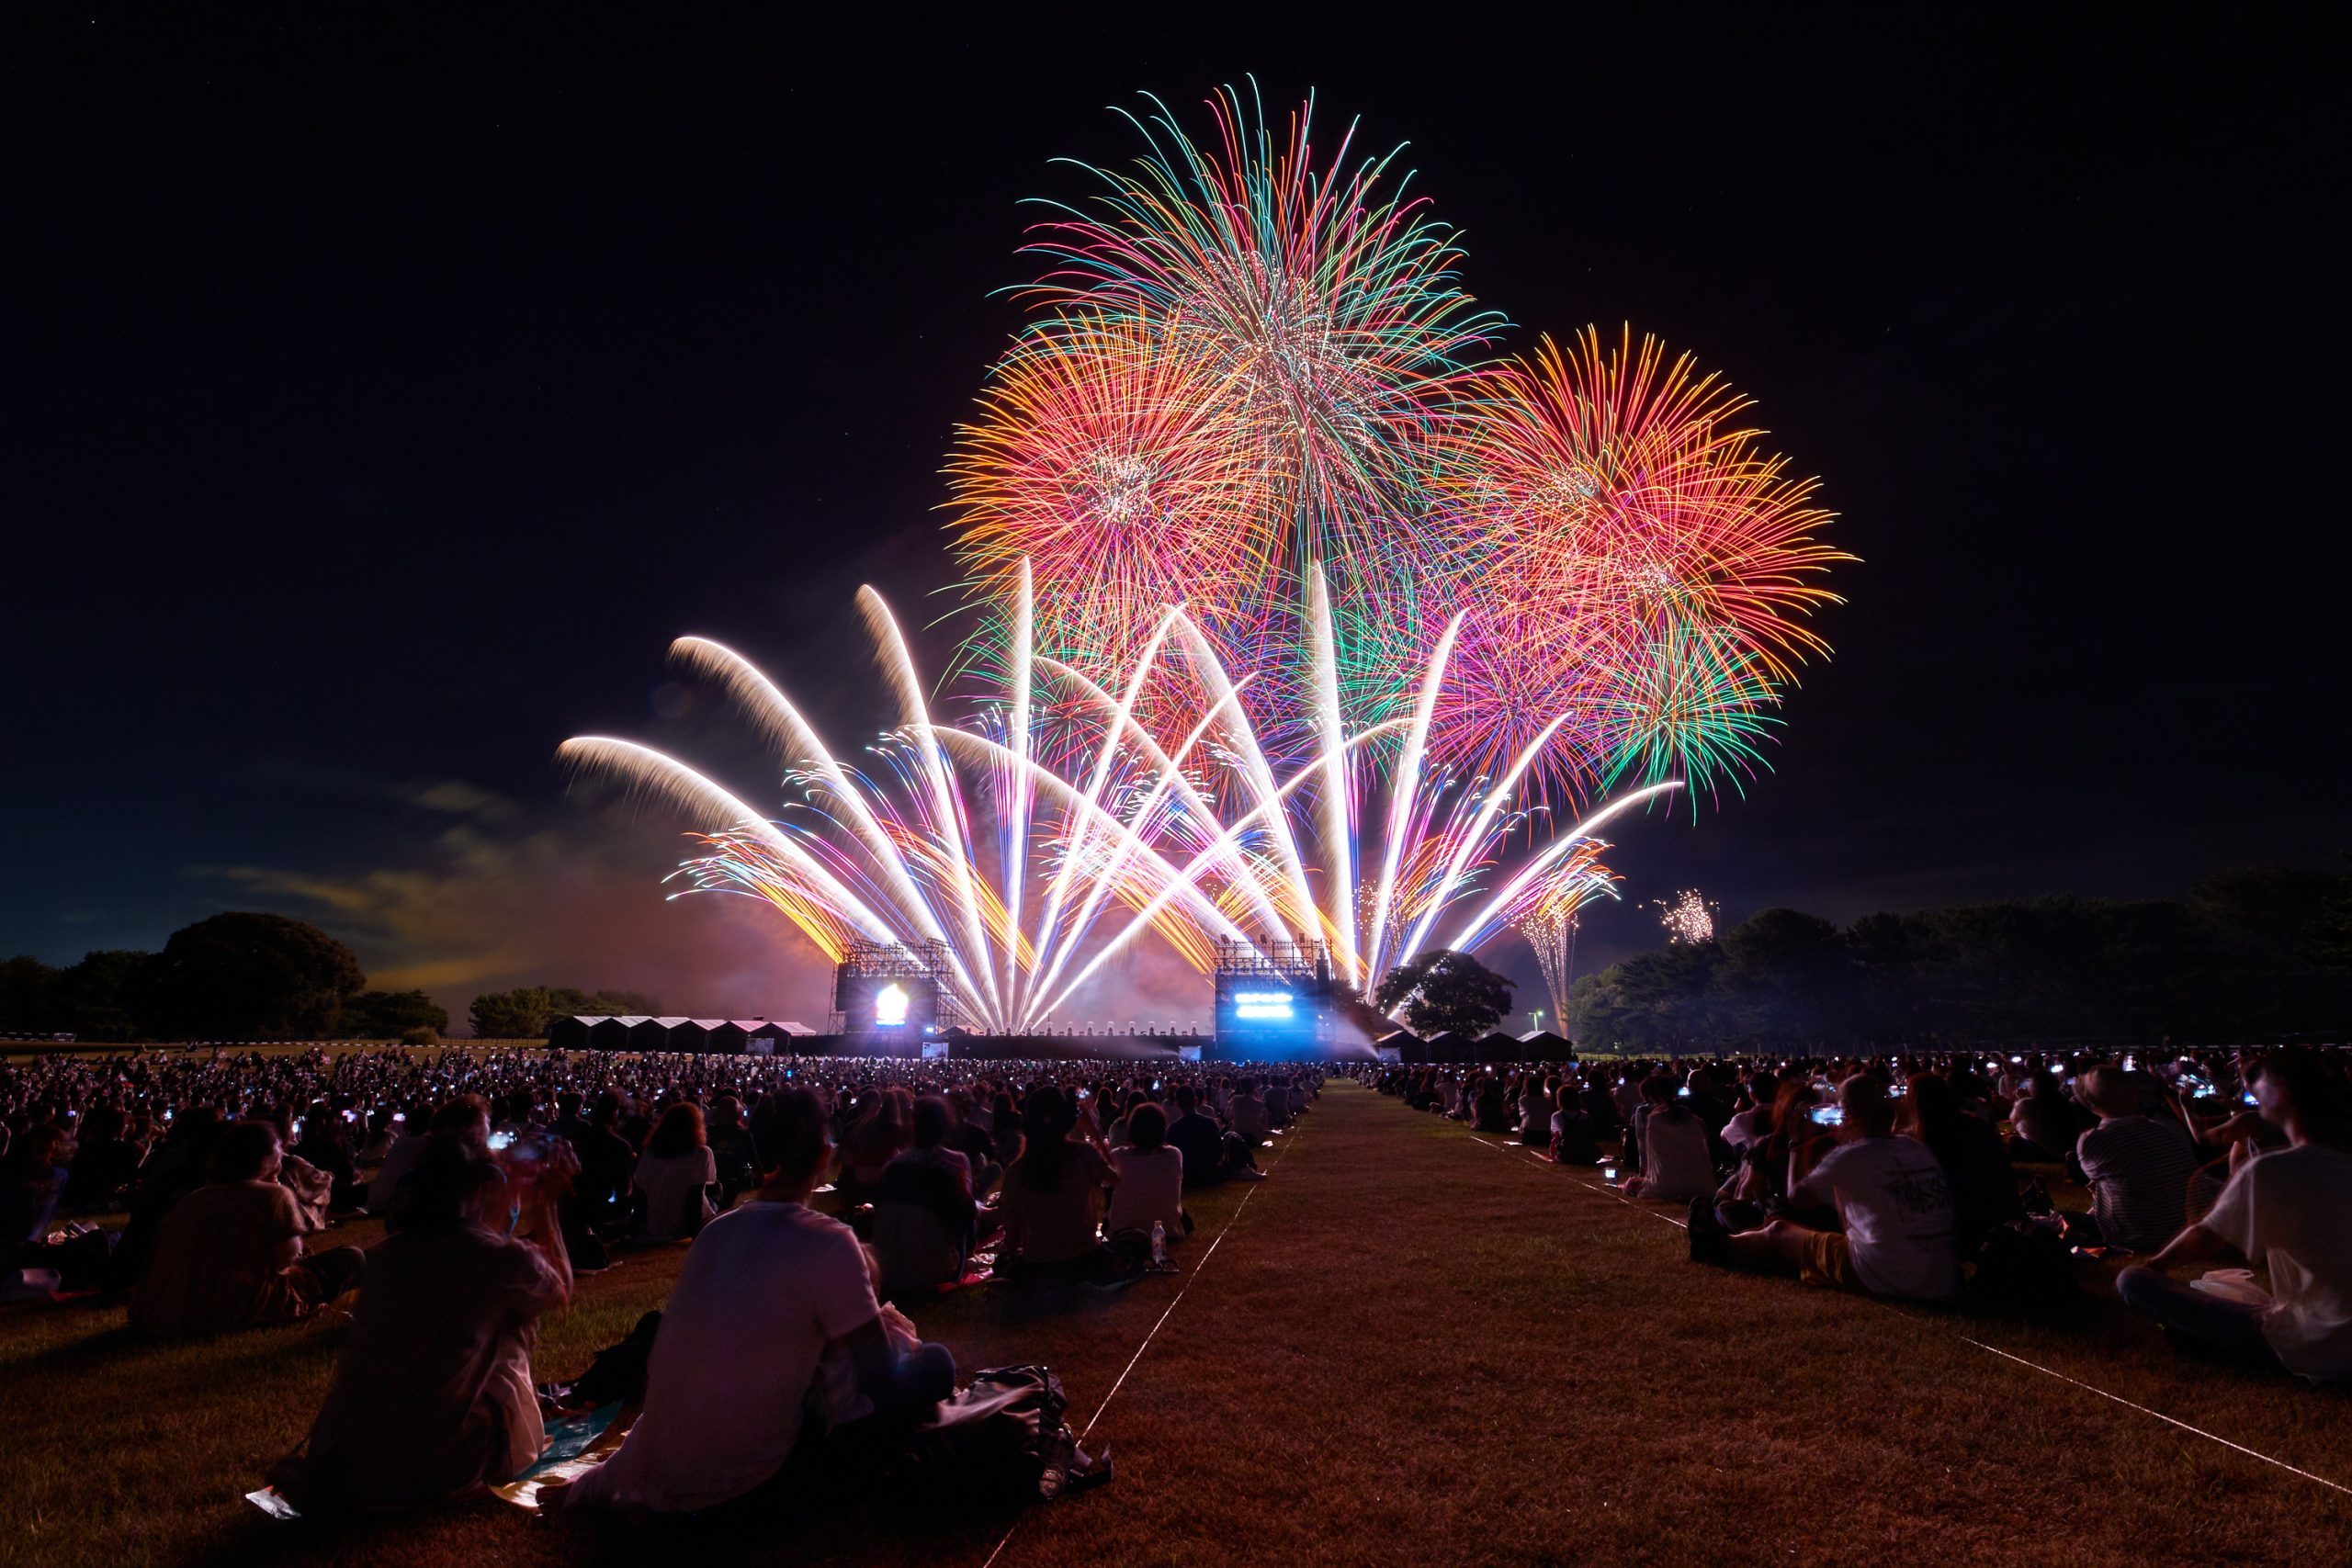 茨城県の国営ひたち海浜公園で開催された音楽と花火のエンターテイメント「Disney Music & Fireworks」